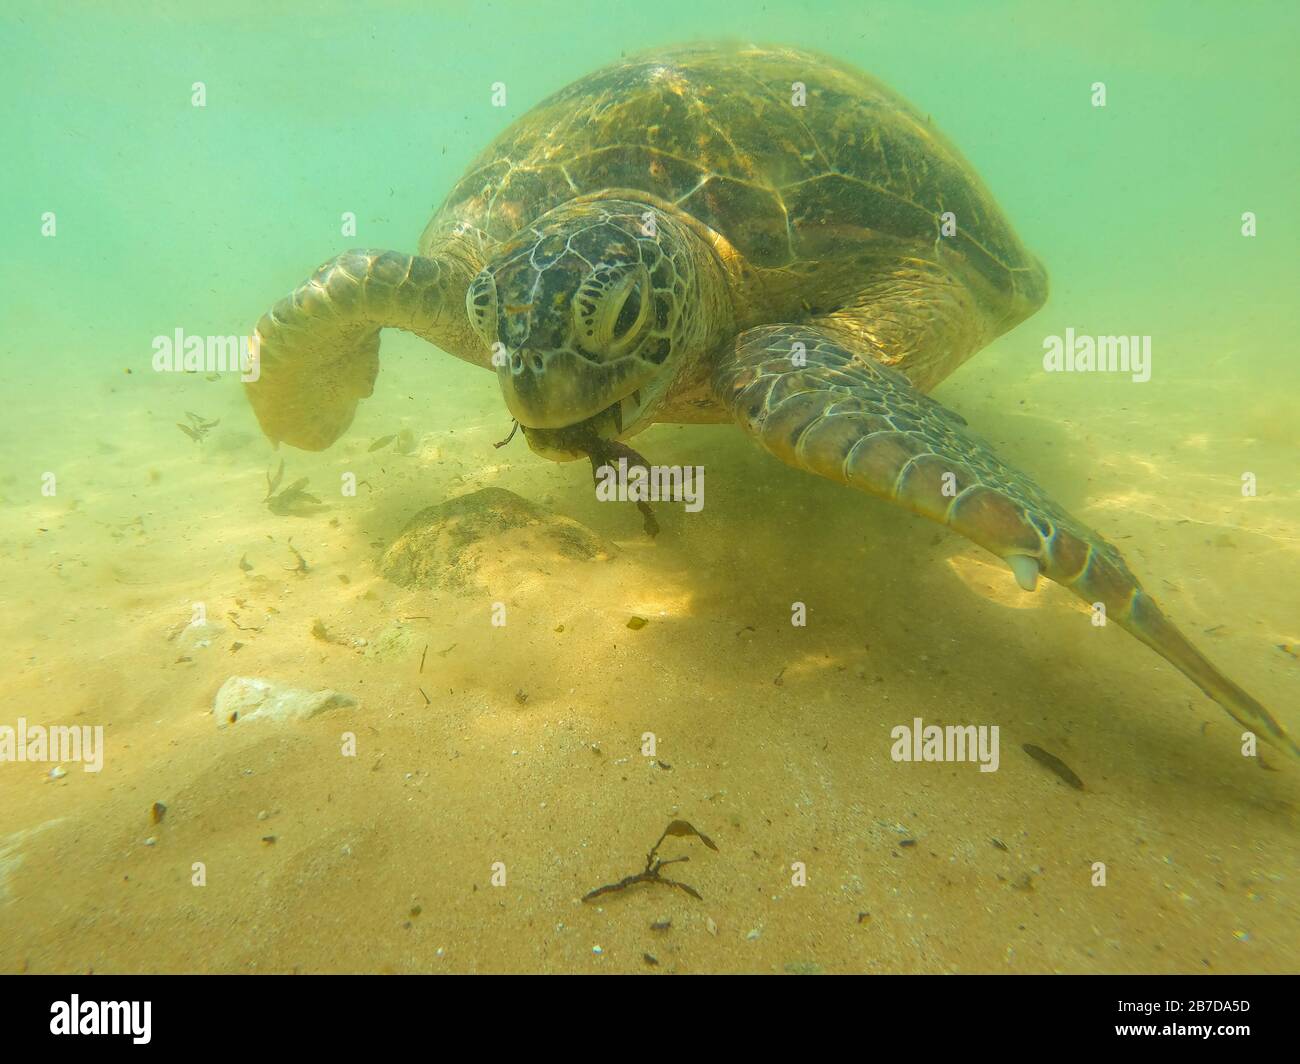 An olive turtle eats algae in shallow water. Hikkaduva, Sri Lanka Stock Photo